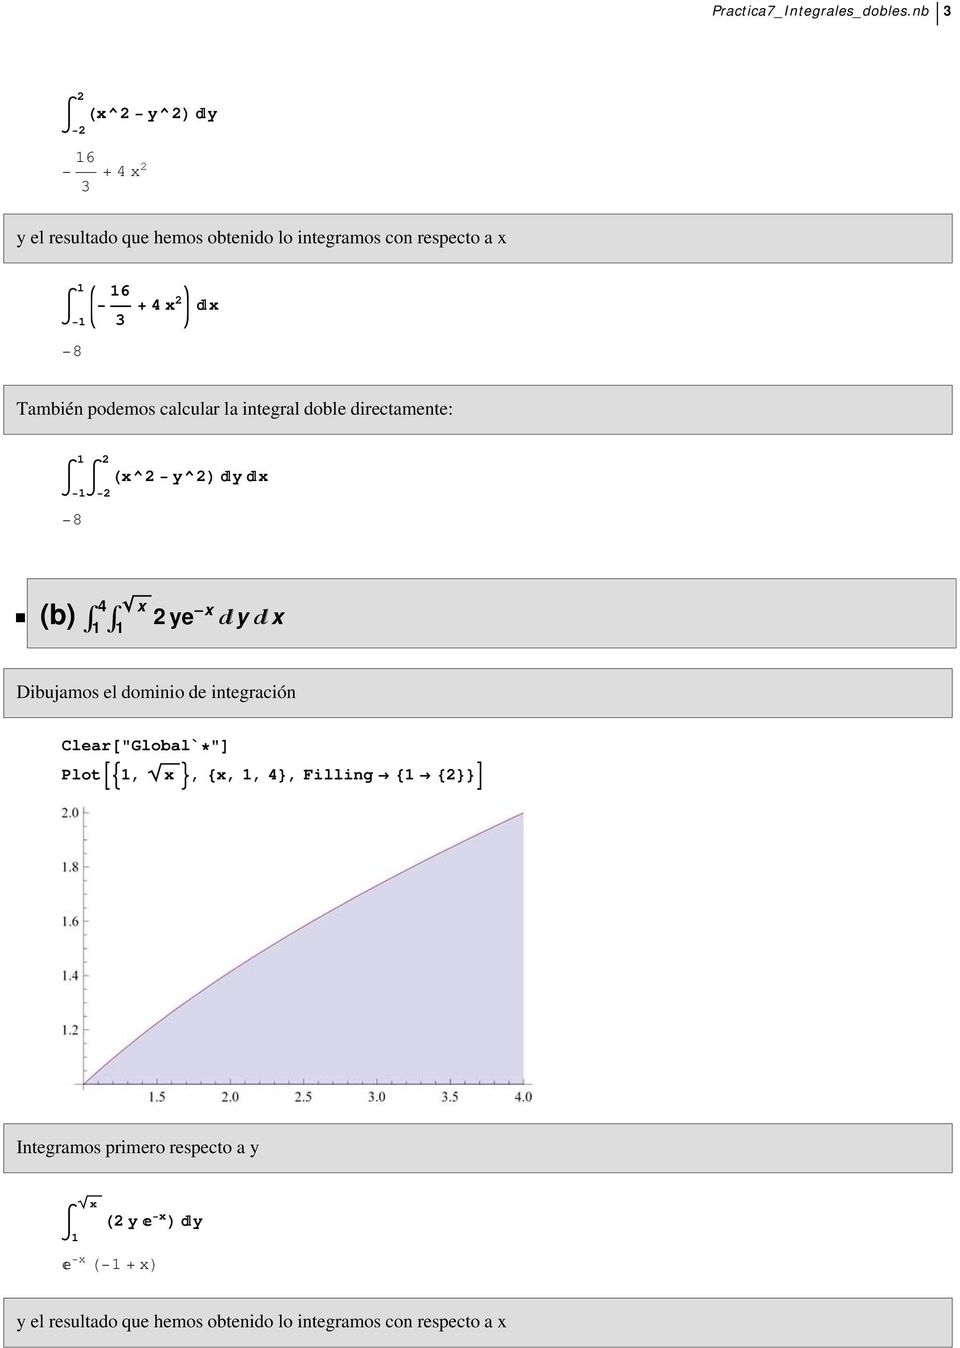 También podemos calcular la integral doble directamente: 8 Hx^ y^l y x ü (b) Ÿ 4 Ÿ x ye -x y x